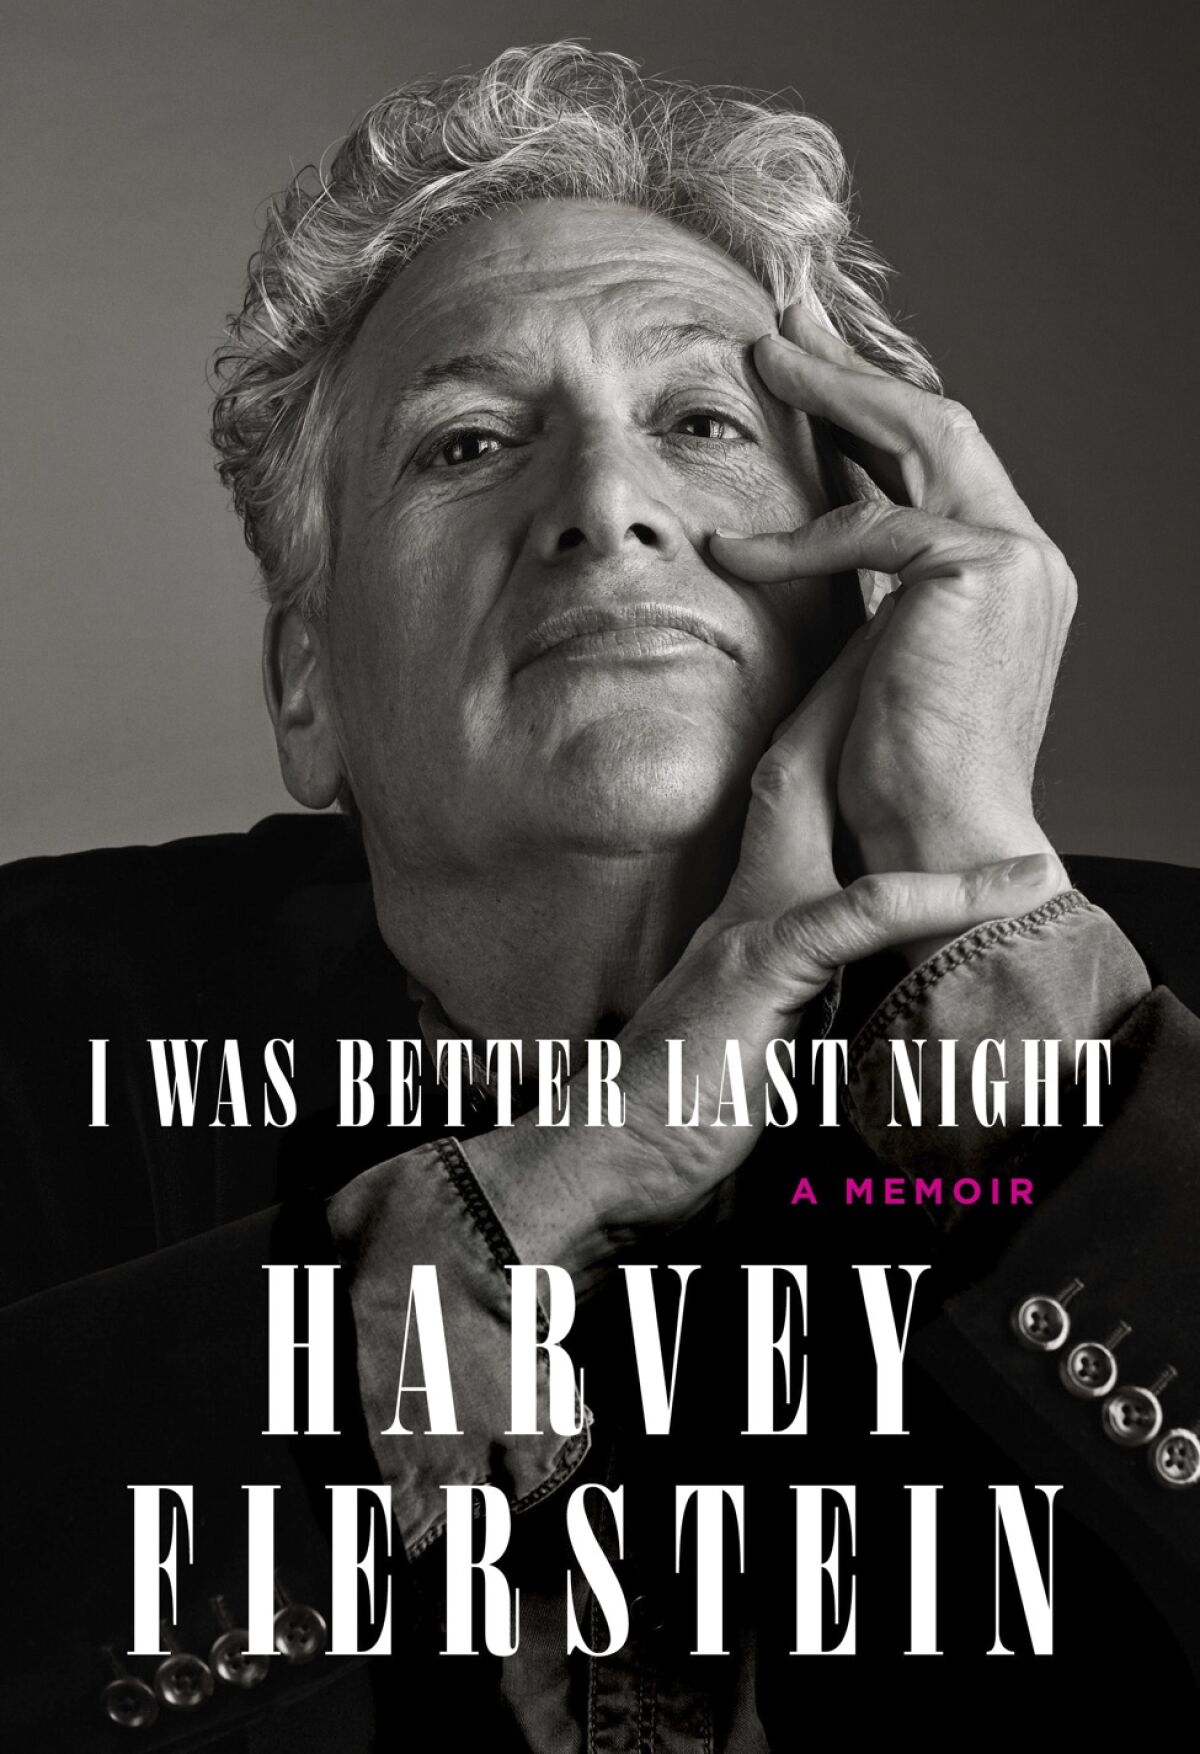 "I Was Better Last Night," by Harvey Fierstein